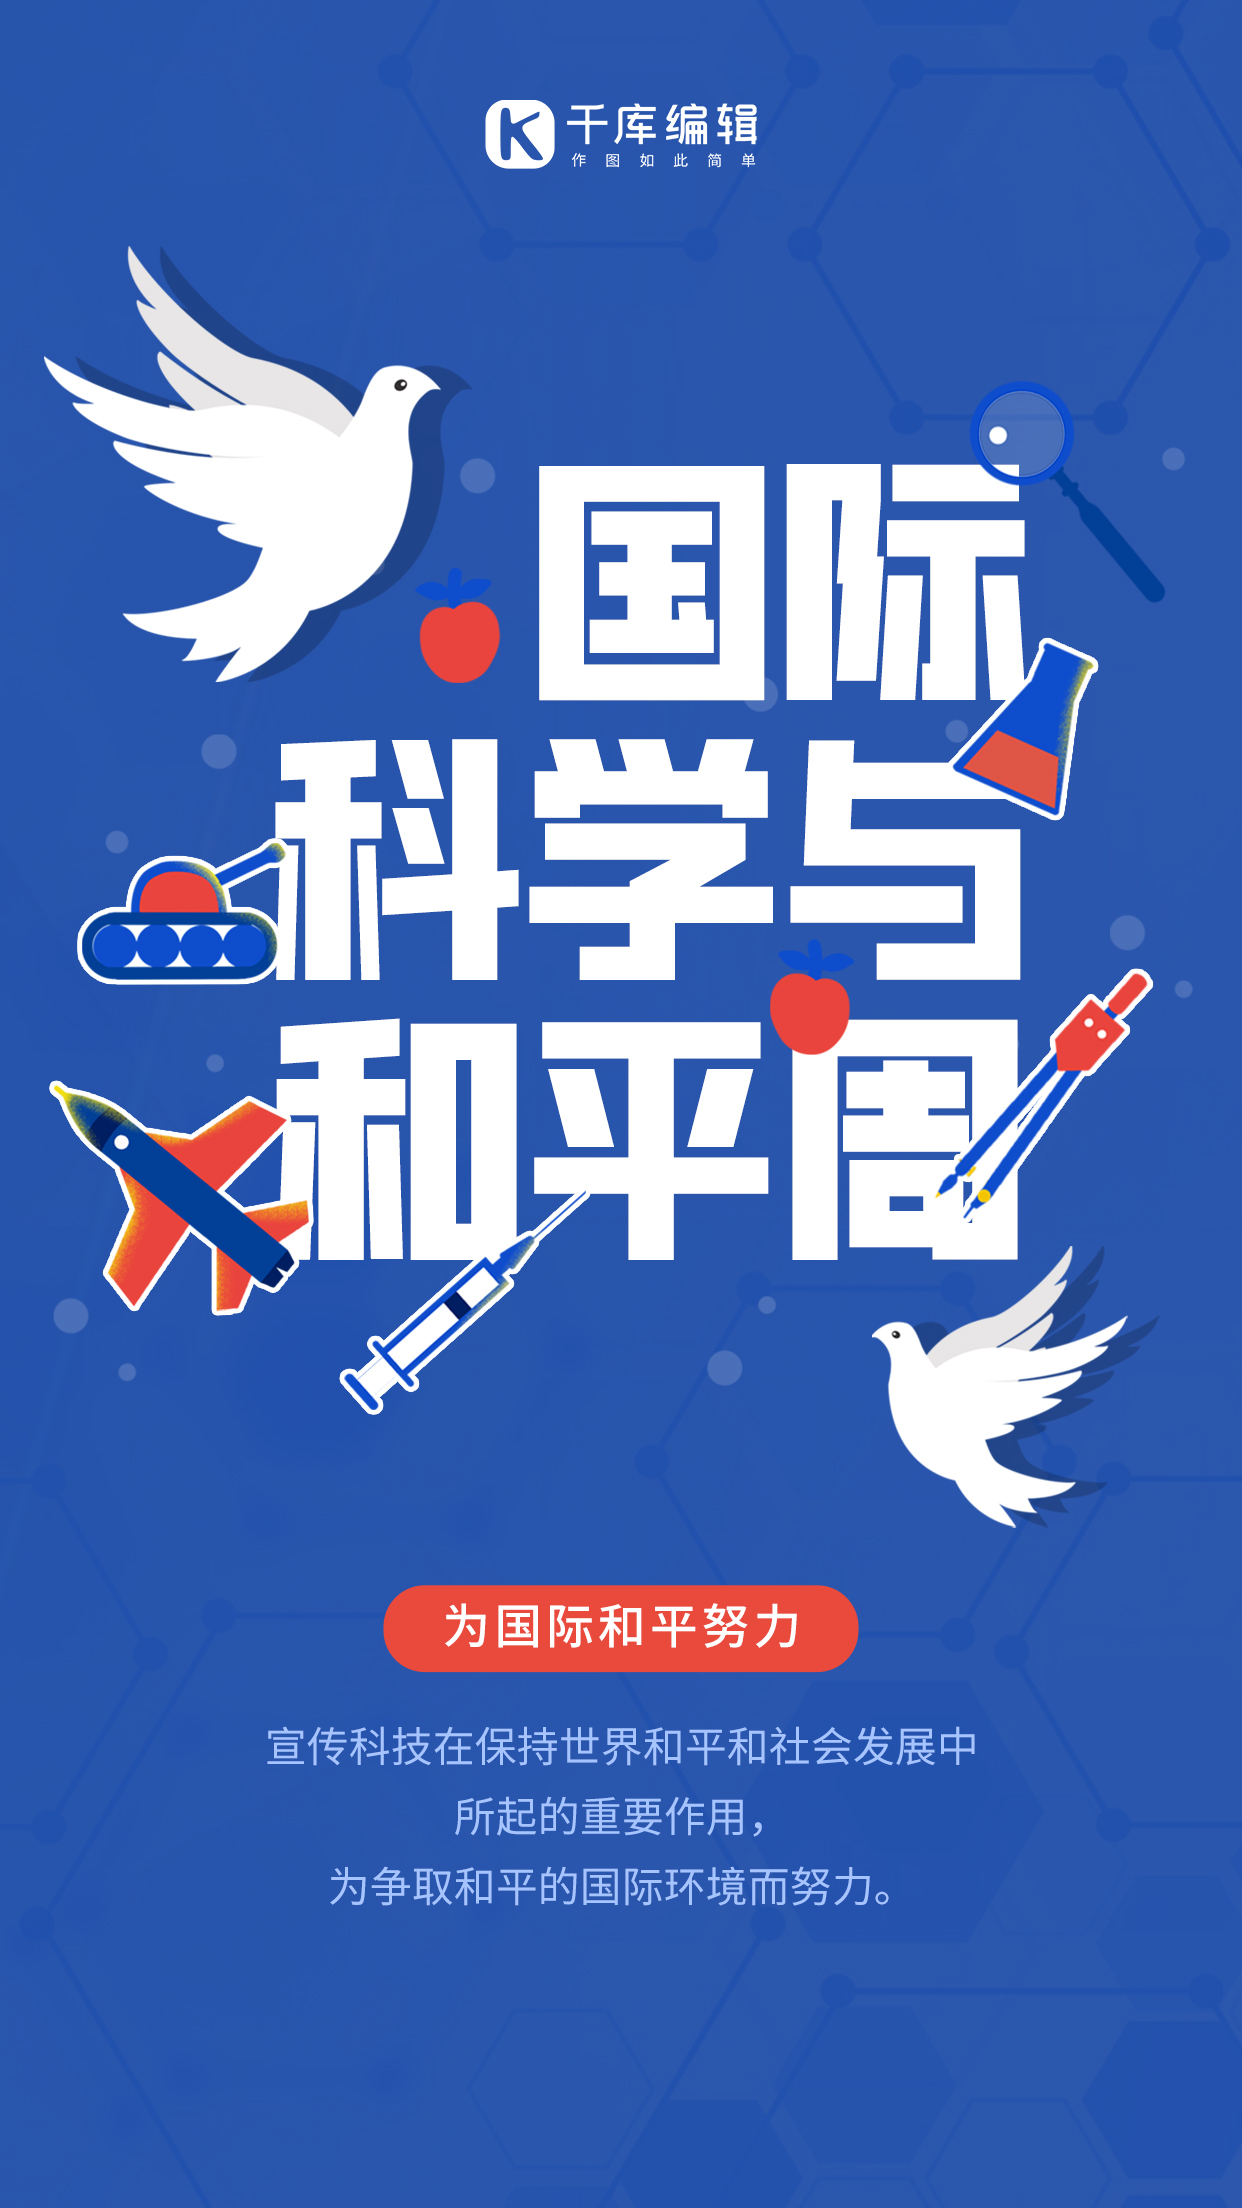 国际科学与和平周宣传蓝橙色简约手机海报图片